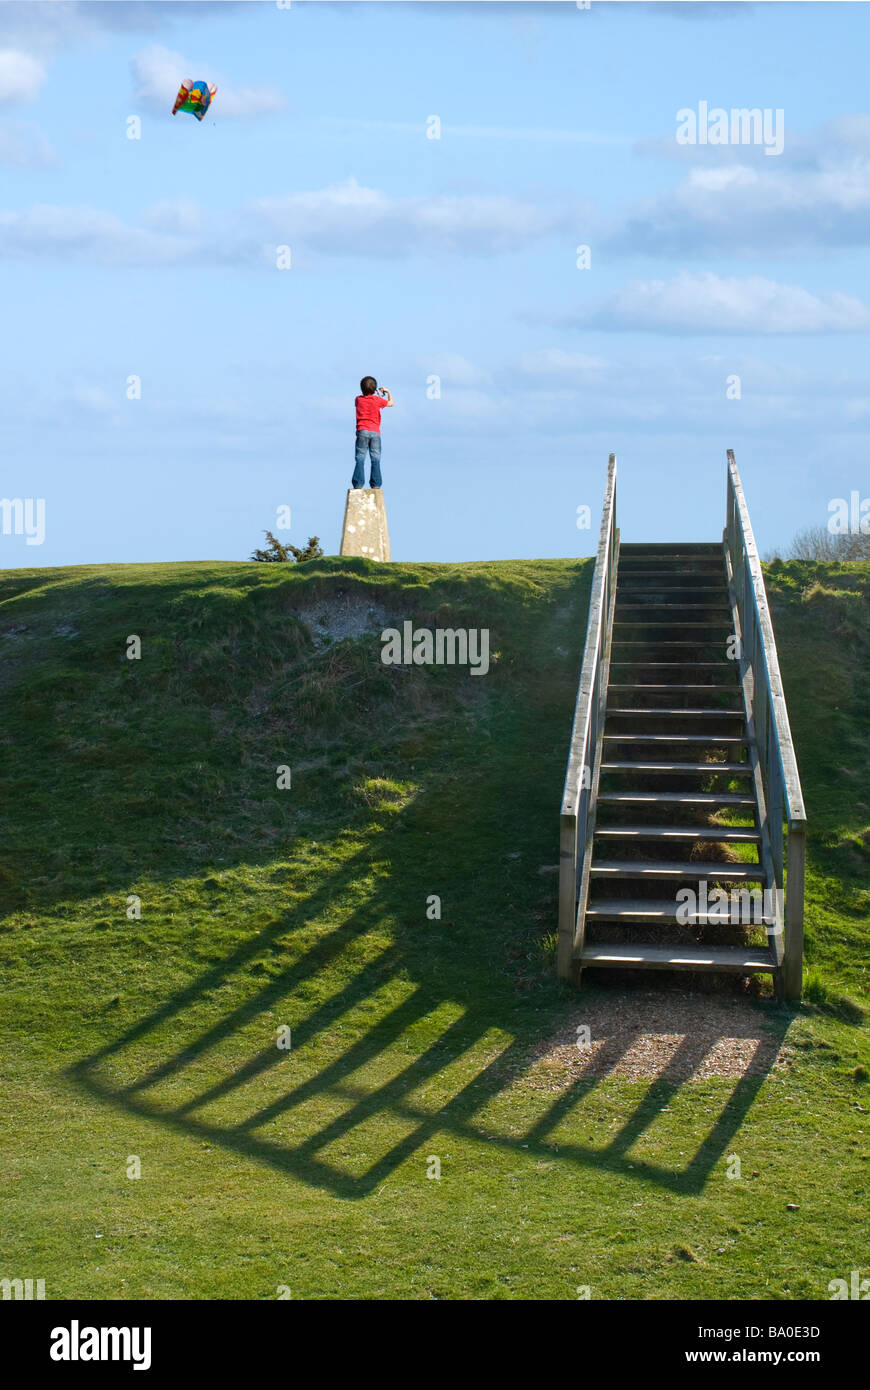 Junge einen Drachen fliegen Stand auf einer Triangulation [Trig] Punkt mit hölzernen Stufen zum Hügel top.danebury Ringe, Hampshire. Stockfoto